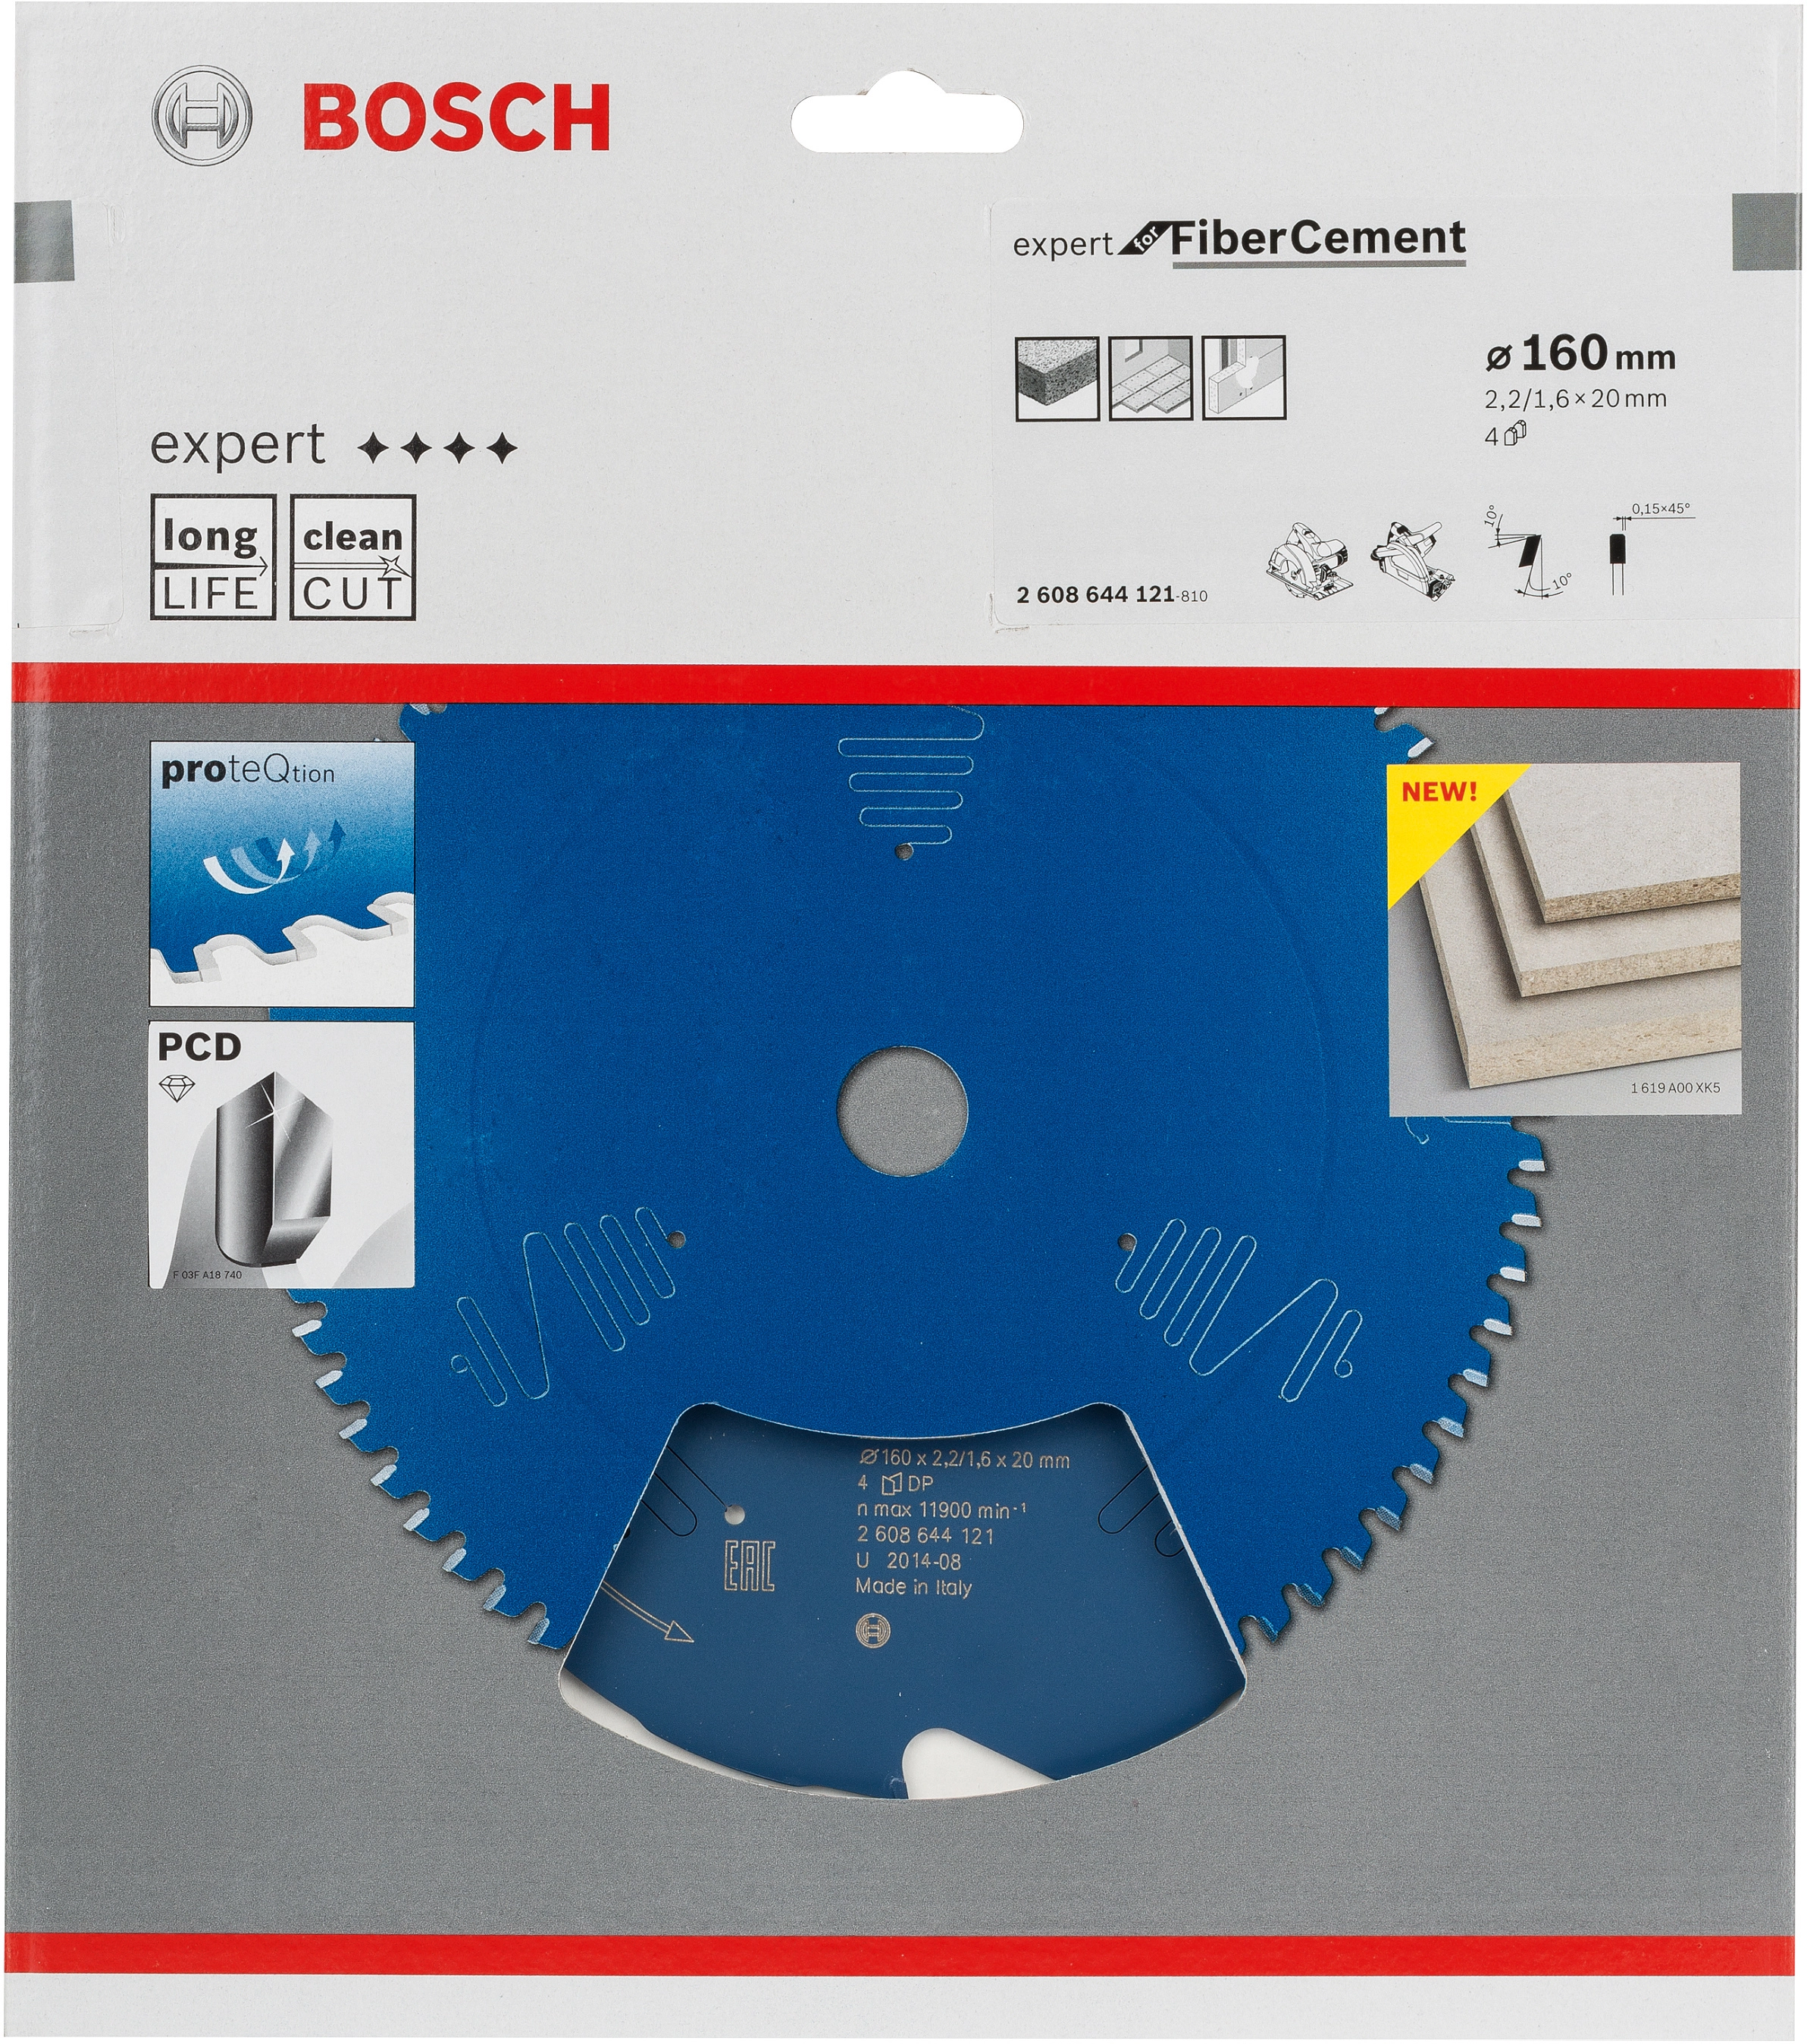 Bosch HW Kreissägeblatt OBI x Expert bei mm Fibre 160 x mm Cement for 2,2 kaufen 20 mm